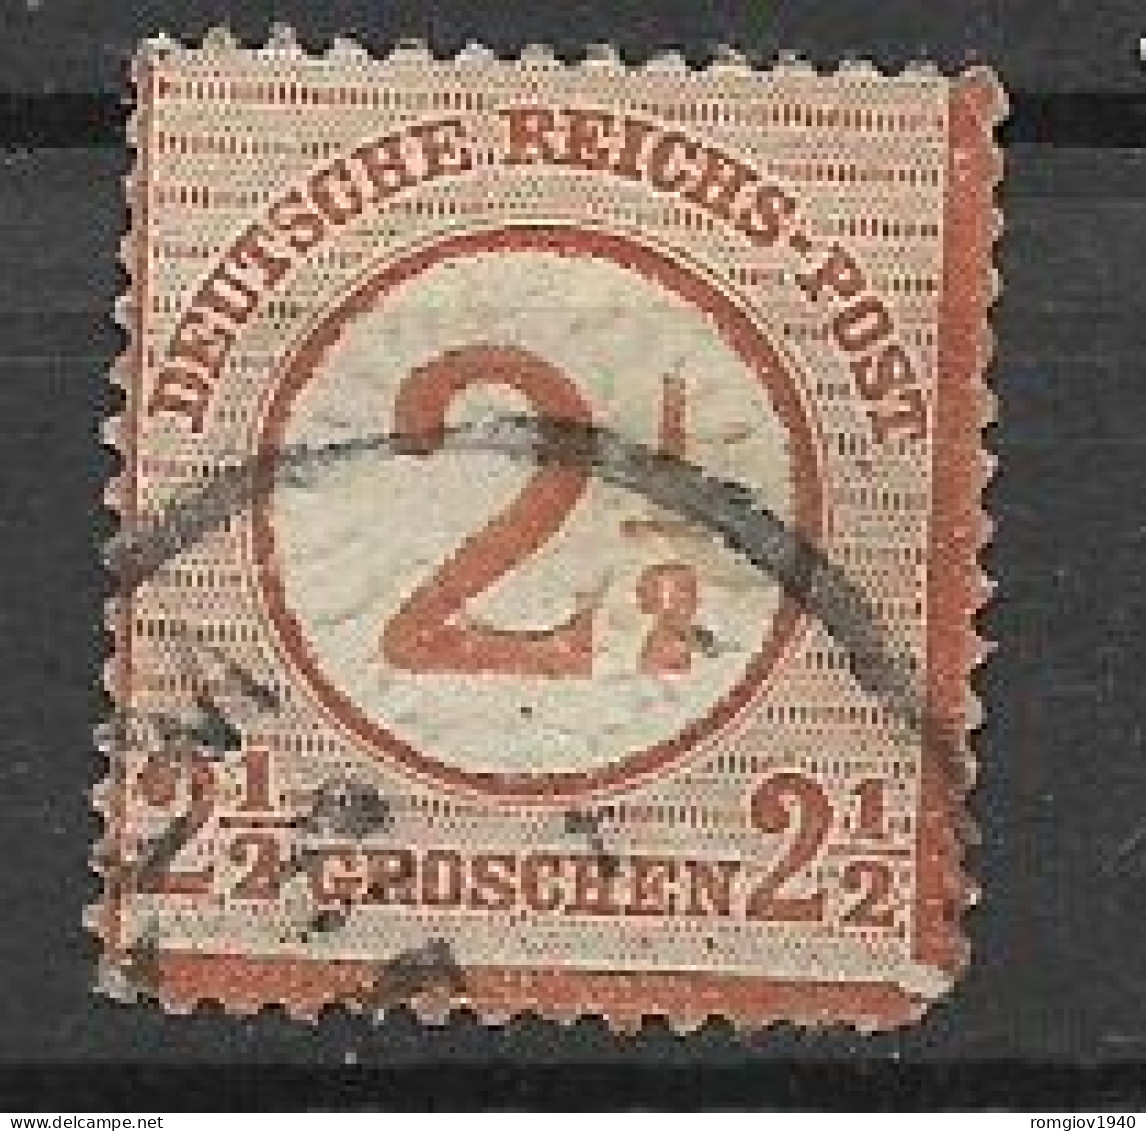 GERMANIA REICH IMPERO 1872 AQUILA  GRANDE SCUDO SULL'AQUILA UNIF. 18  USATO  VF - Used Stamps